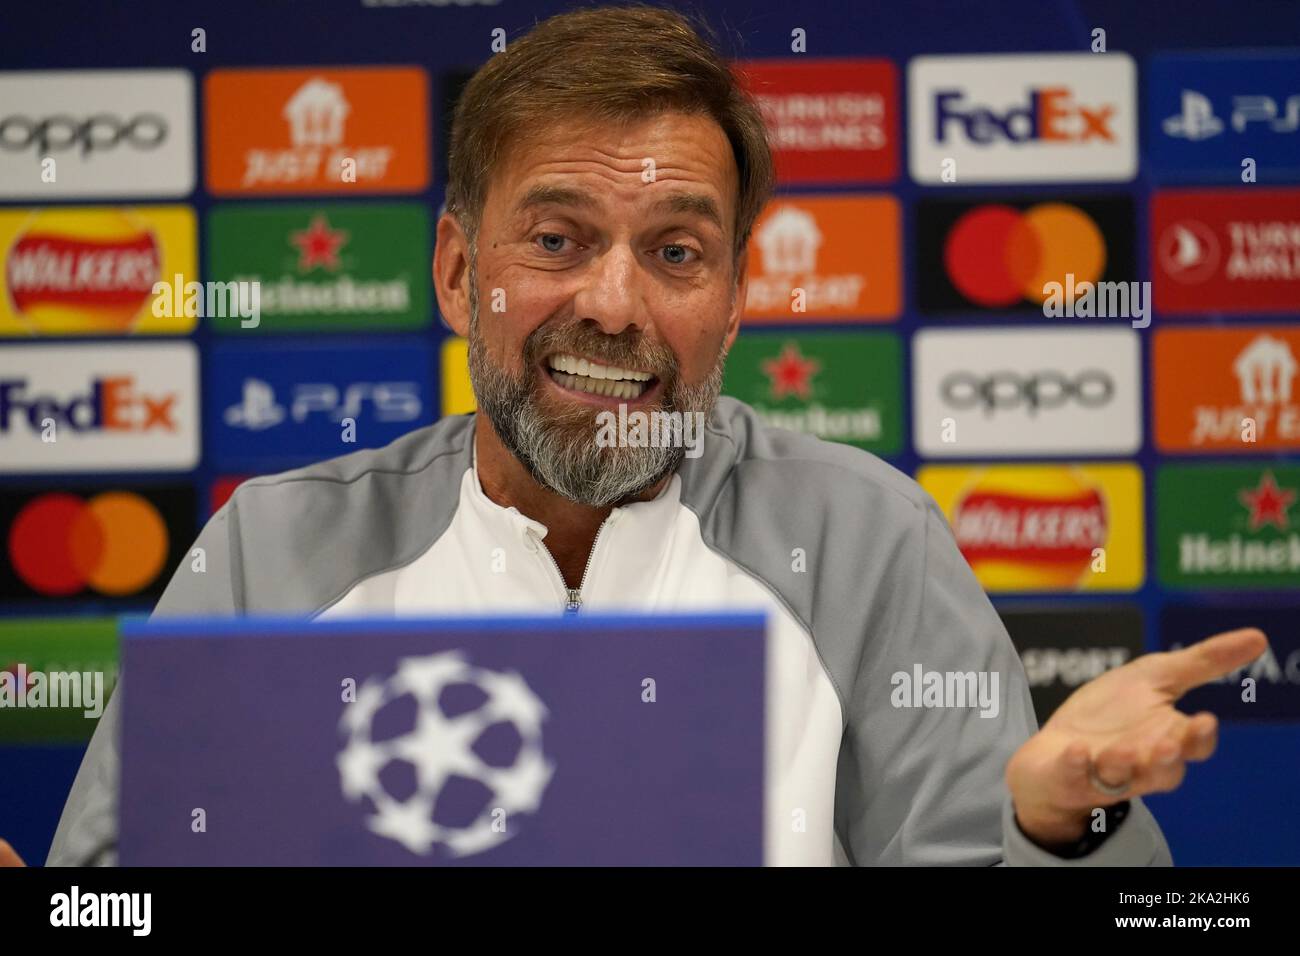 El director de Liverpool, Jurgen Klopp, durante una conferencia de prensa en Anfield, Liverpool. Fecha de la foto: Lunes 31 de octubre de 2022. Foto de stock